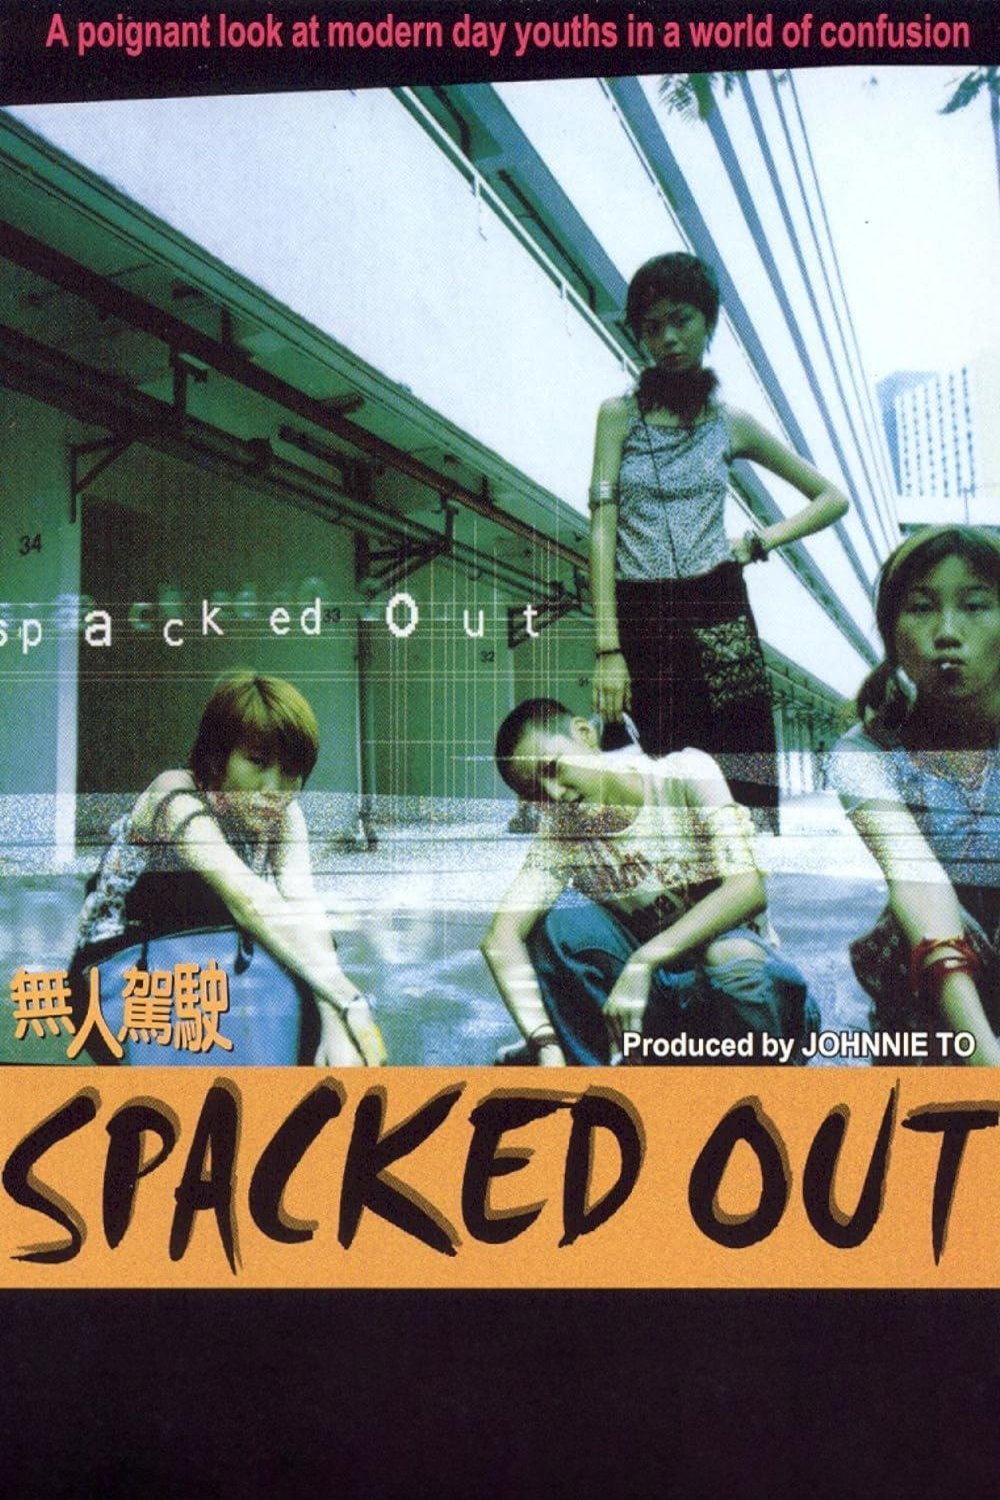 L'affiche originale du film Spacked Out en Cantonais